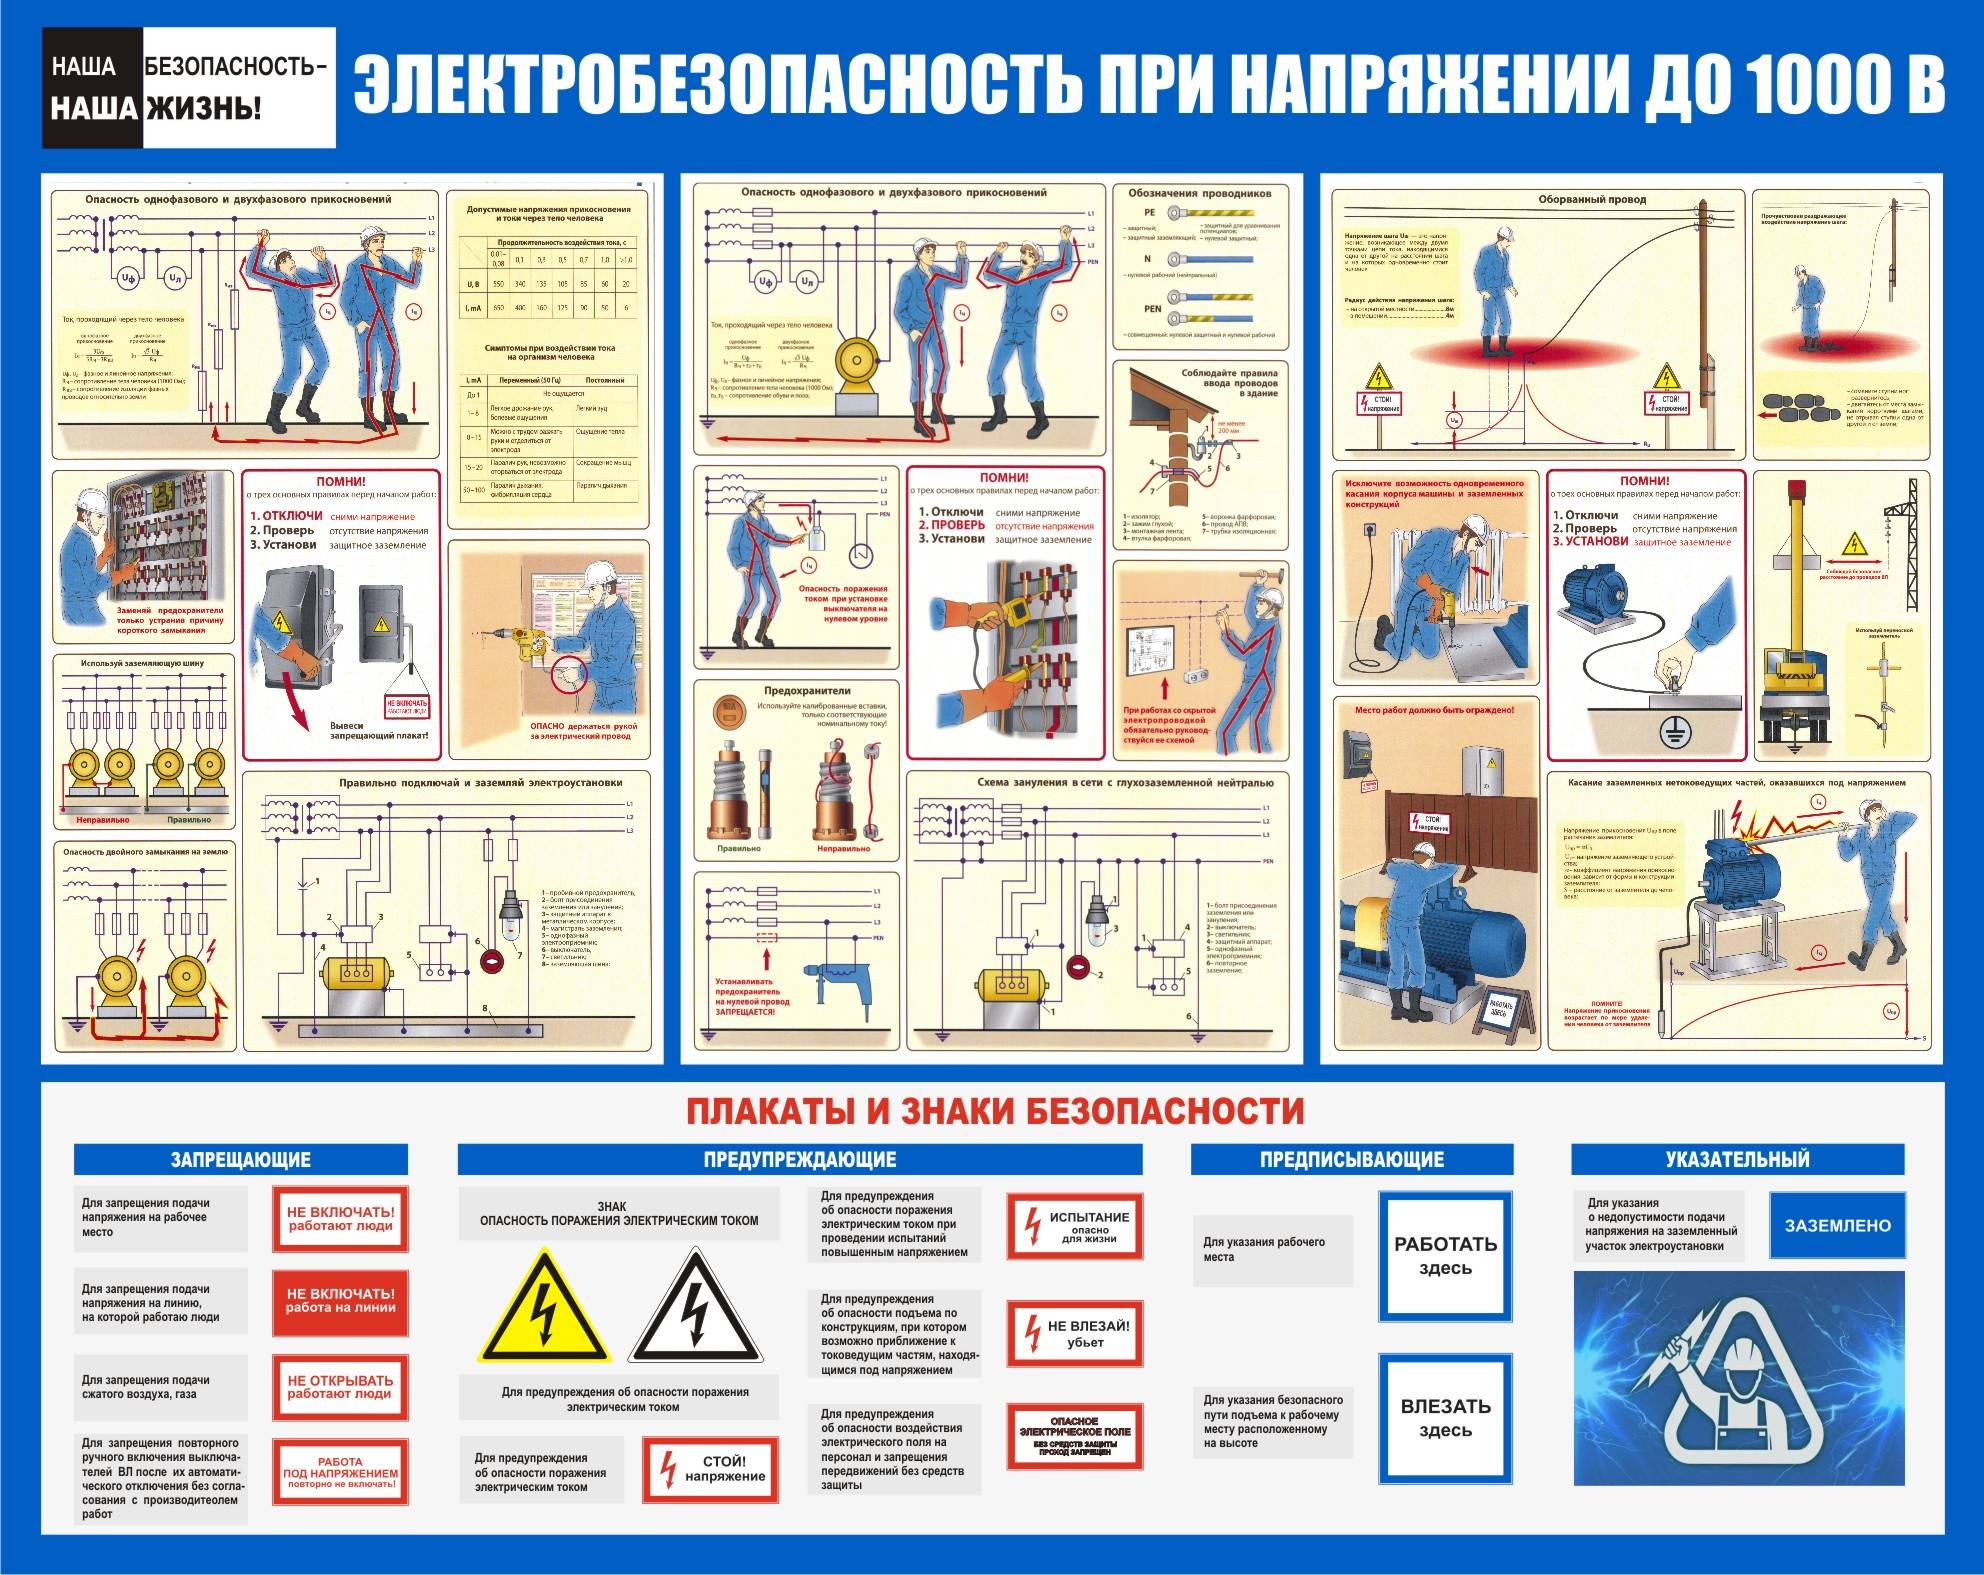 Дать определение понятию промышленная безопасность — folkmap.ru — закажите лучшее сочинение у нас!